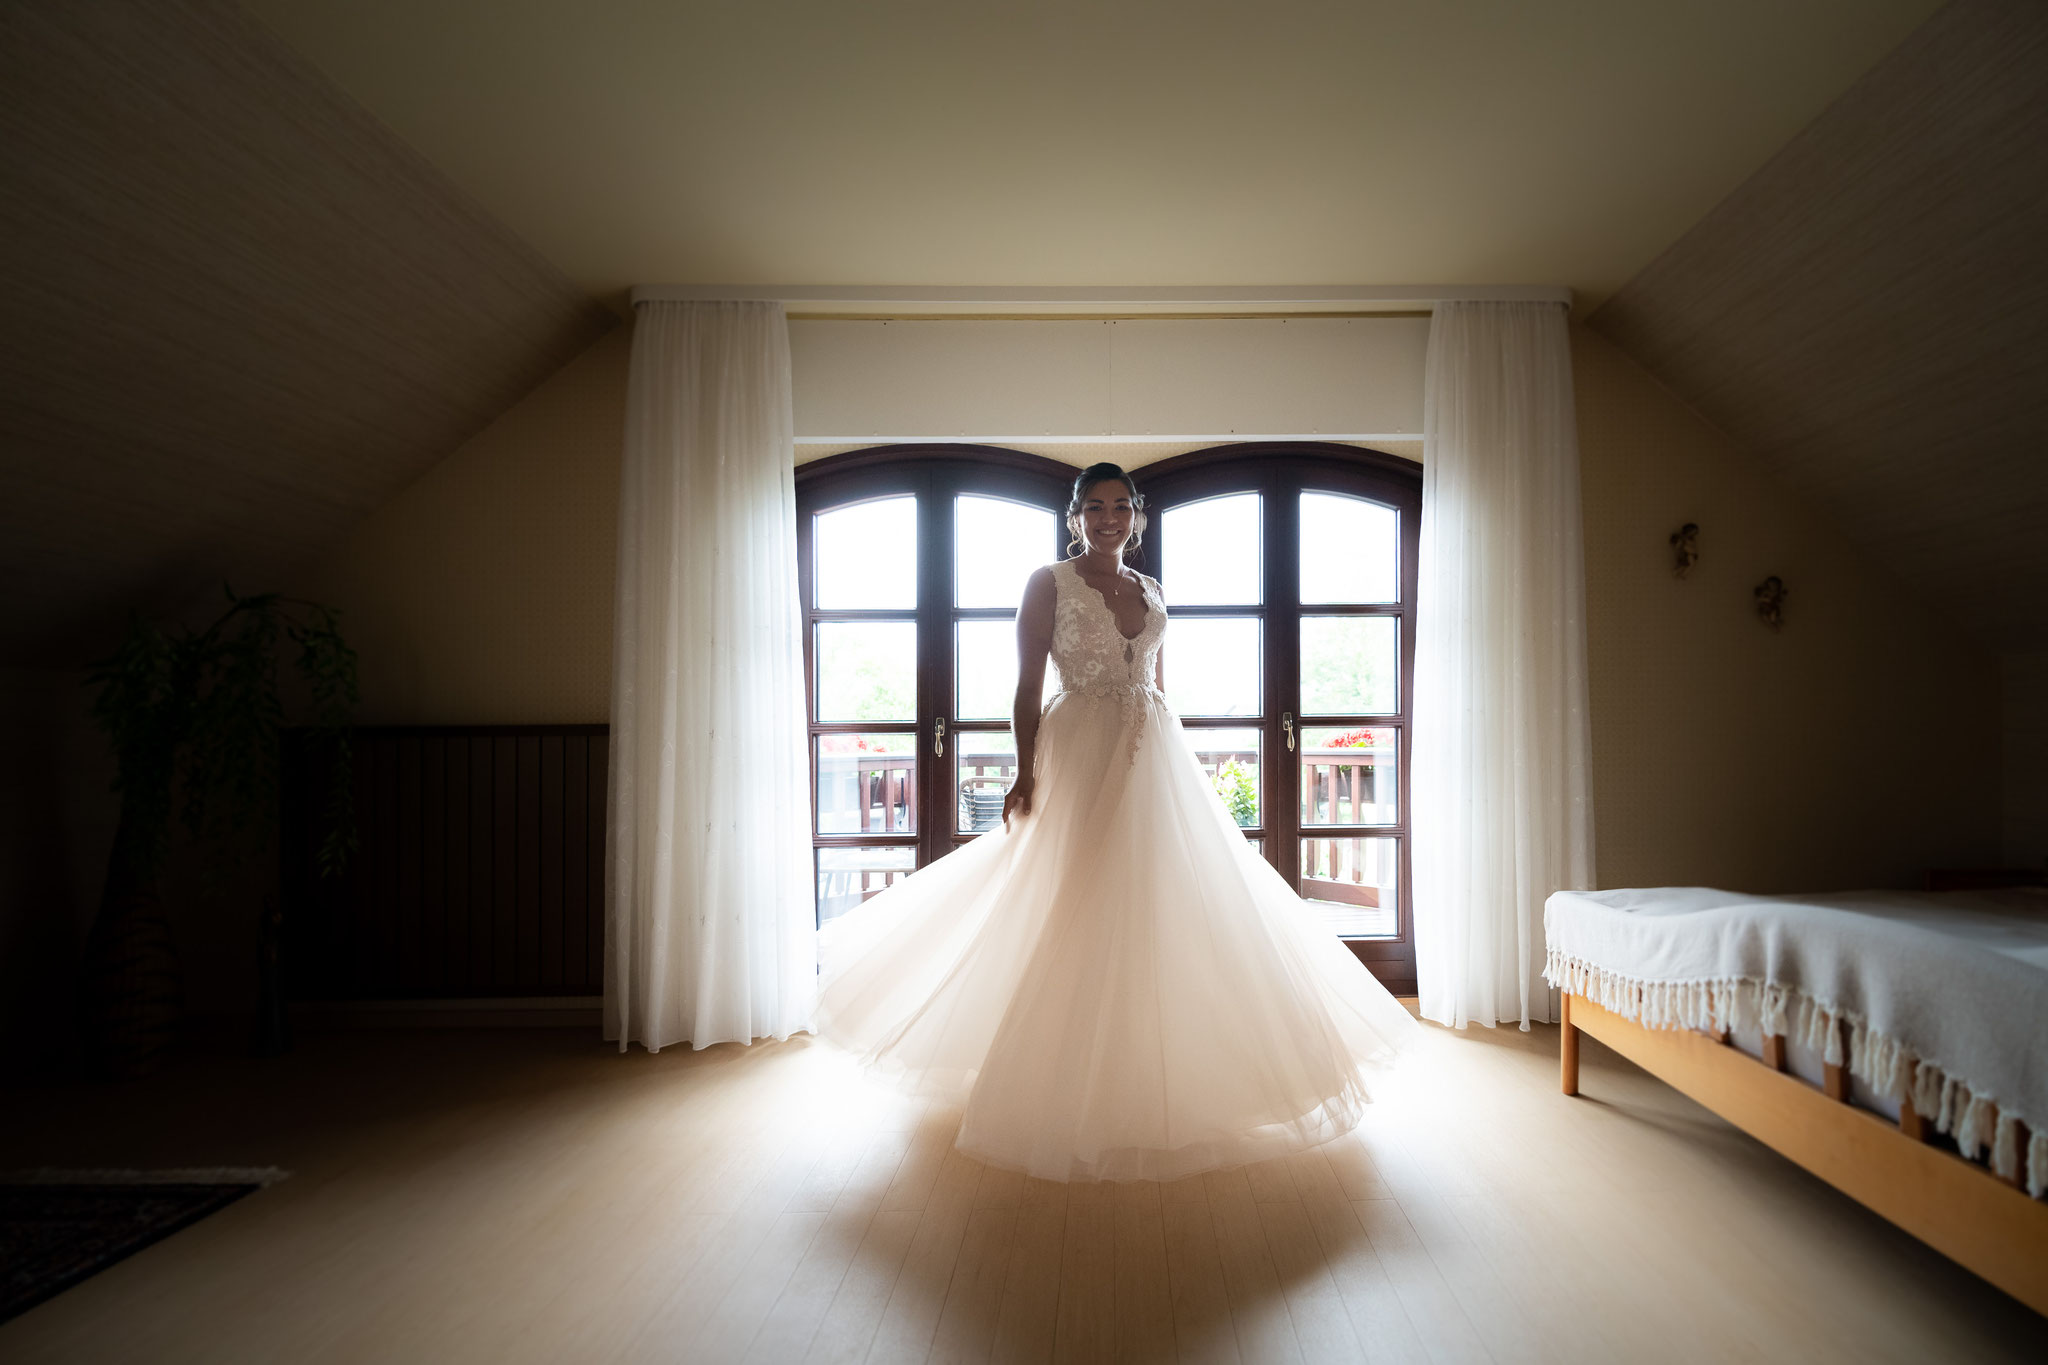 Professioneller Hochzeitsfotograf und Videograf für meine Hochzeit in Hanau, Frankfurt und Umgebung